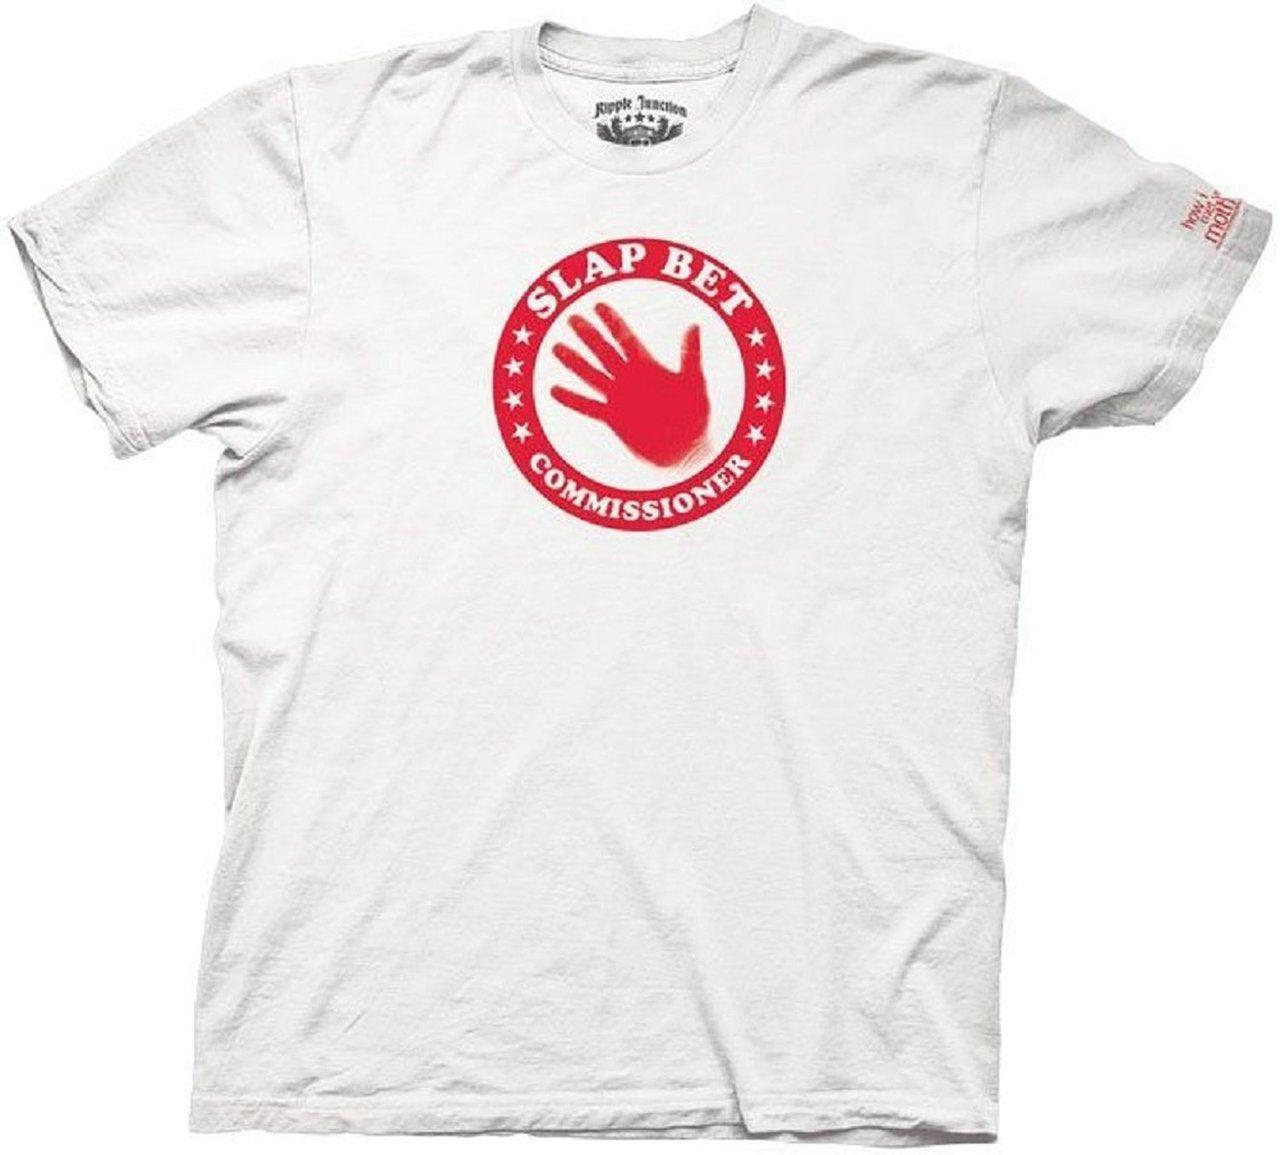 Slap Bet Commissioner White T-shirt-tvso